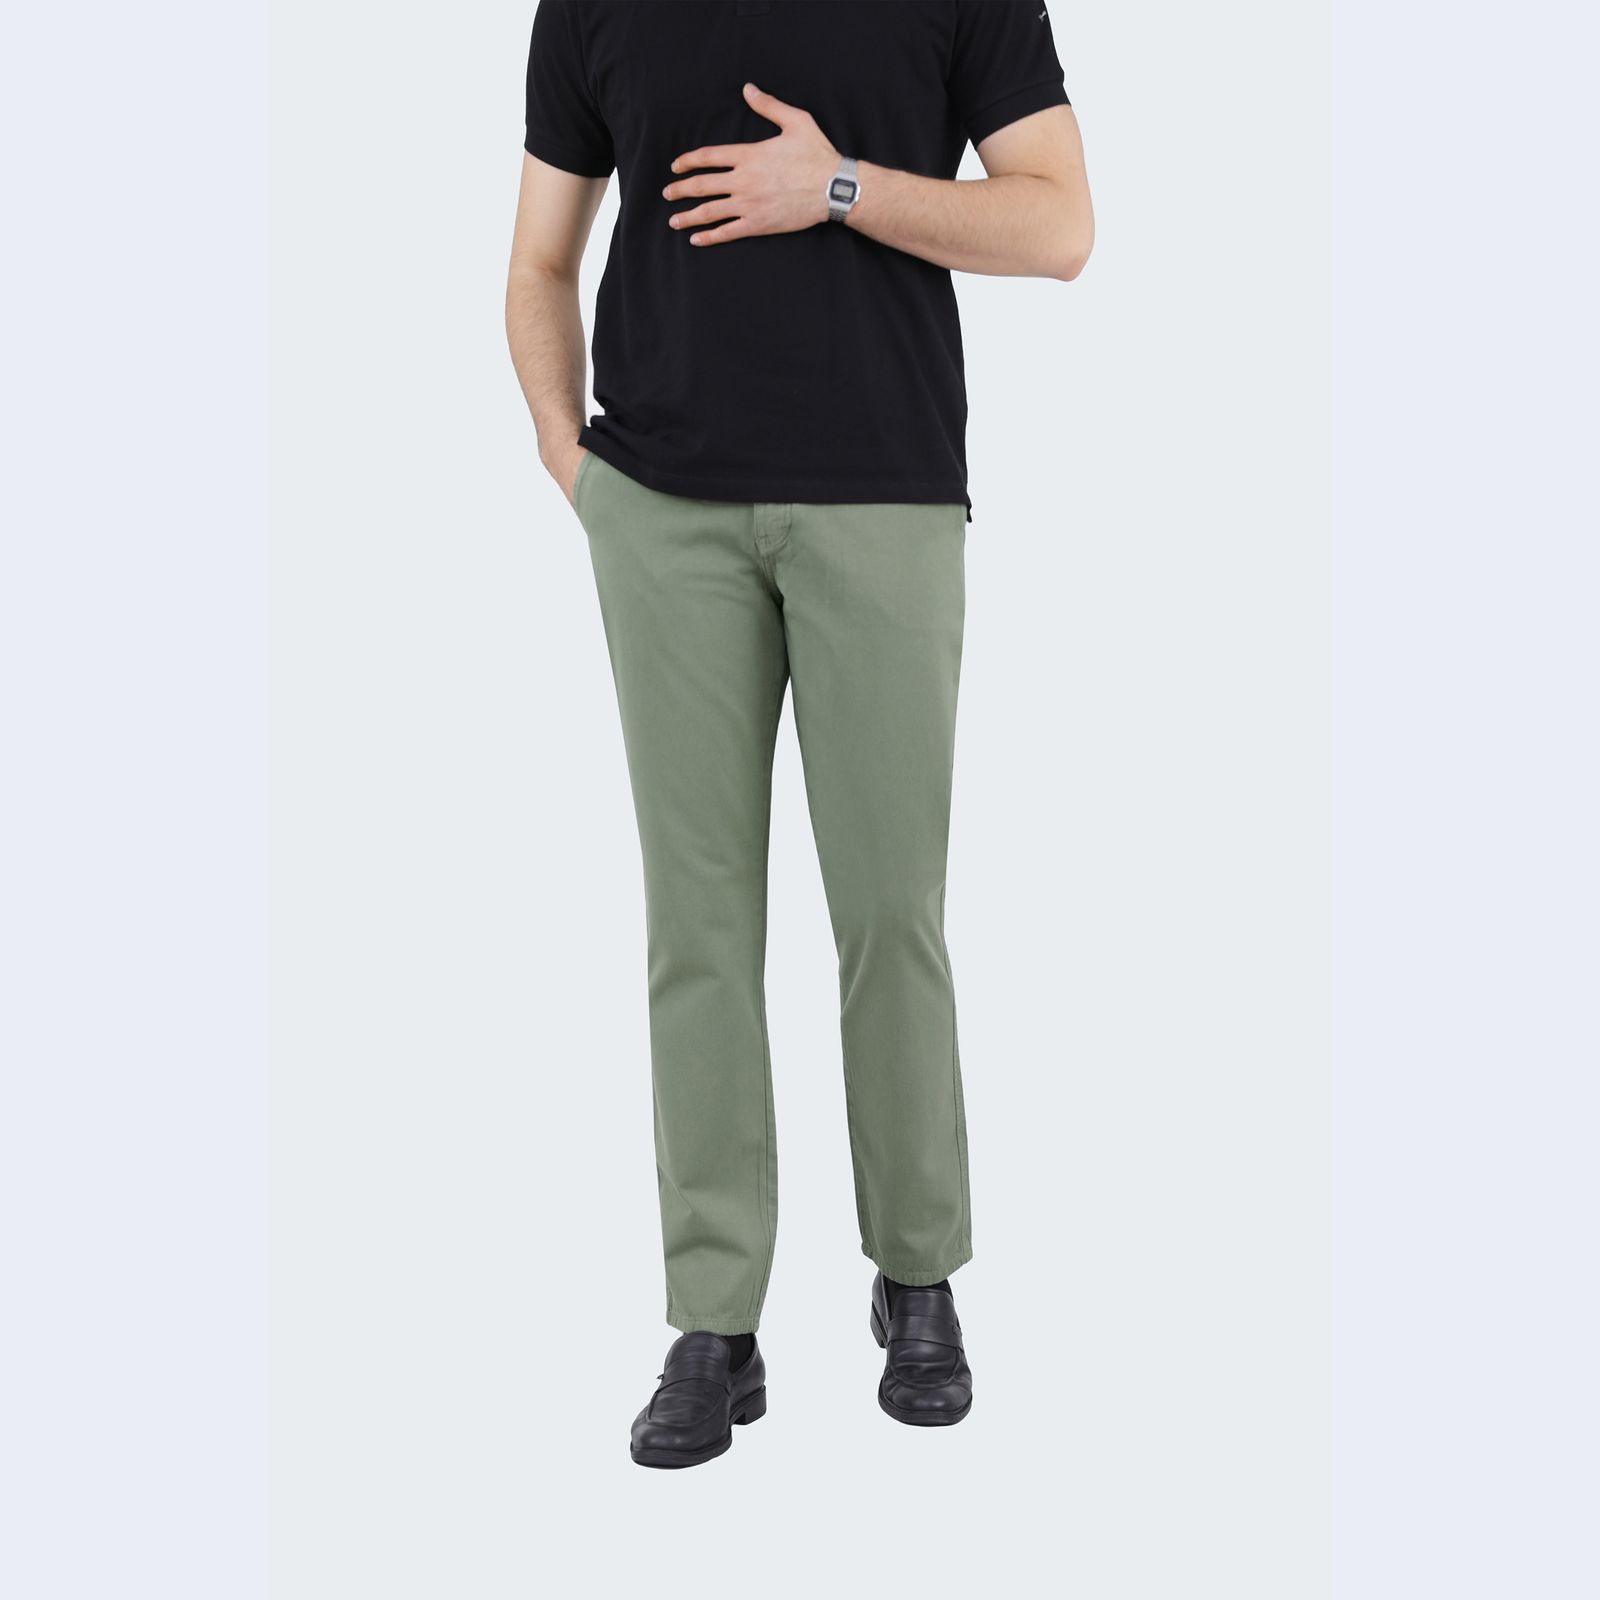 شلوار مردانه پاتن جامه مدل کتان کد 101221020006377 رنگ سبز روشن -  - 2